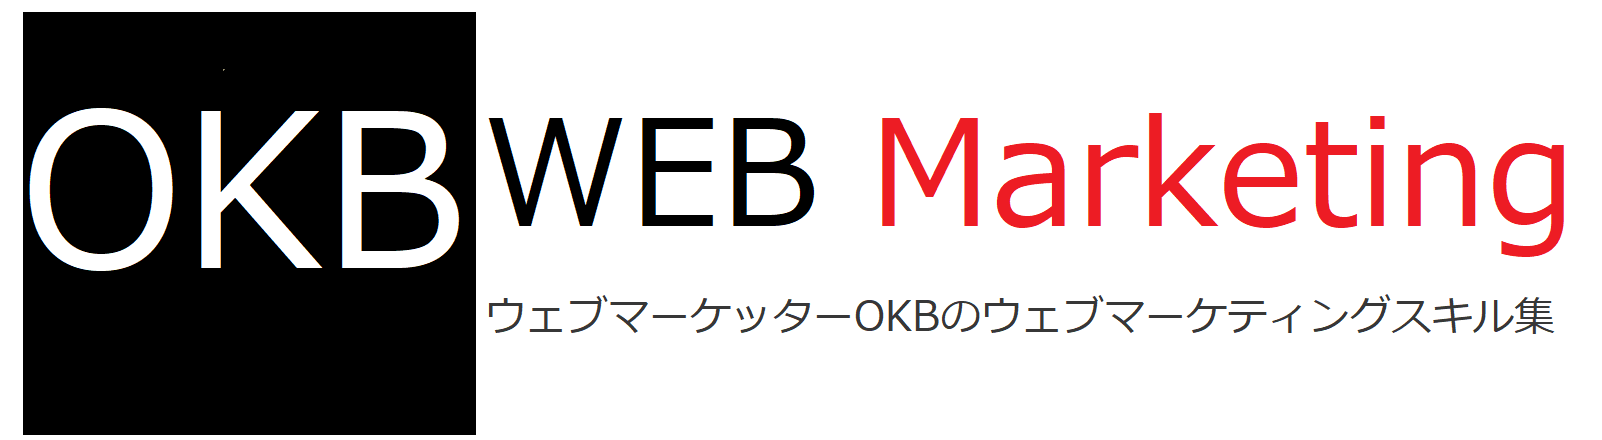 ウェブマーケッターOKBのウェブマーケティングスキル集